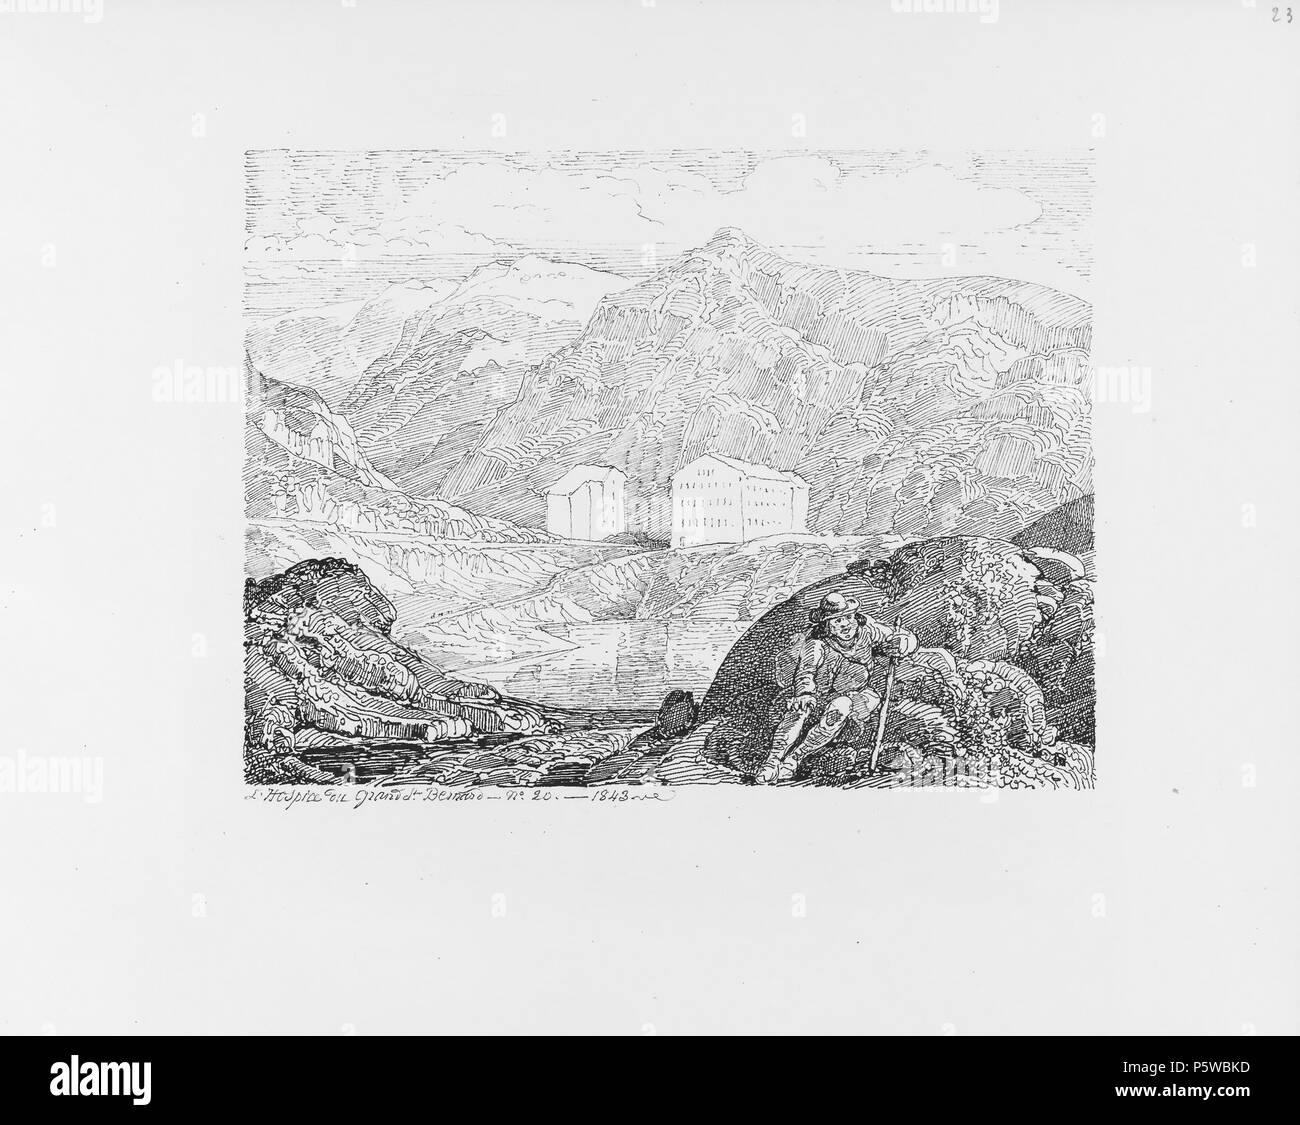 322 CH-NB-Voyage autour du Mont-Blanc dans les vallées d'Hérens de Zermatt et au Grimsel 1843-nbdig-19161-022 Stock Photo